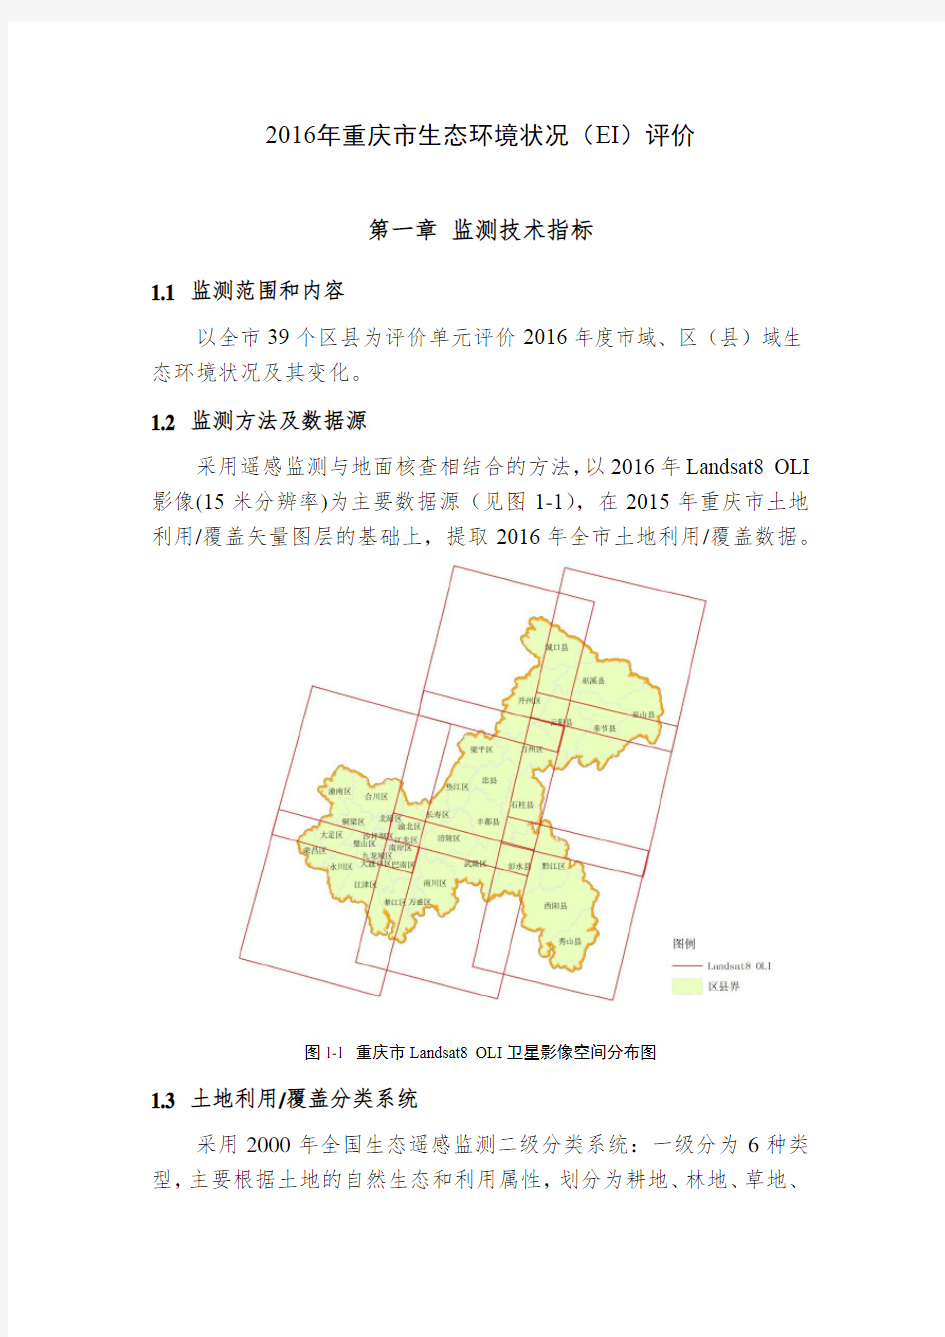 2016年重庆市生态环境状况(EI)评价